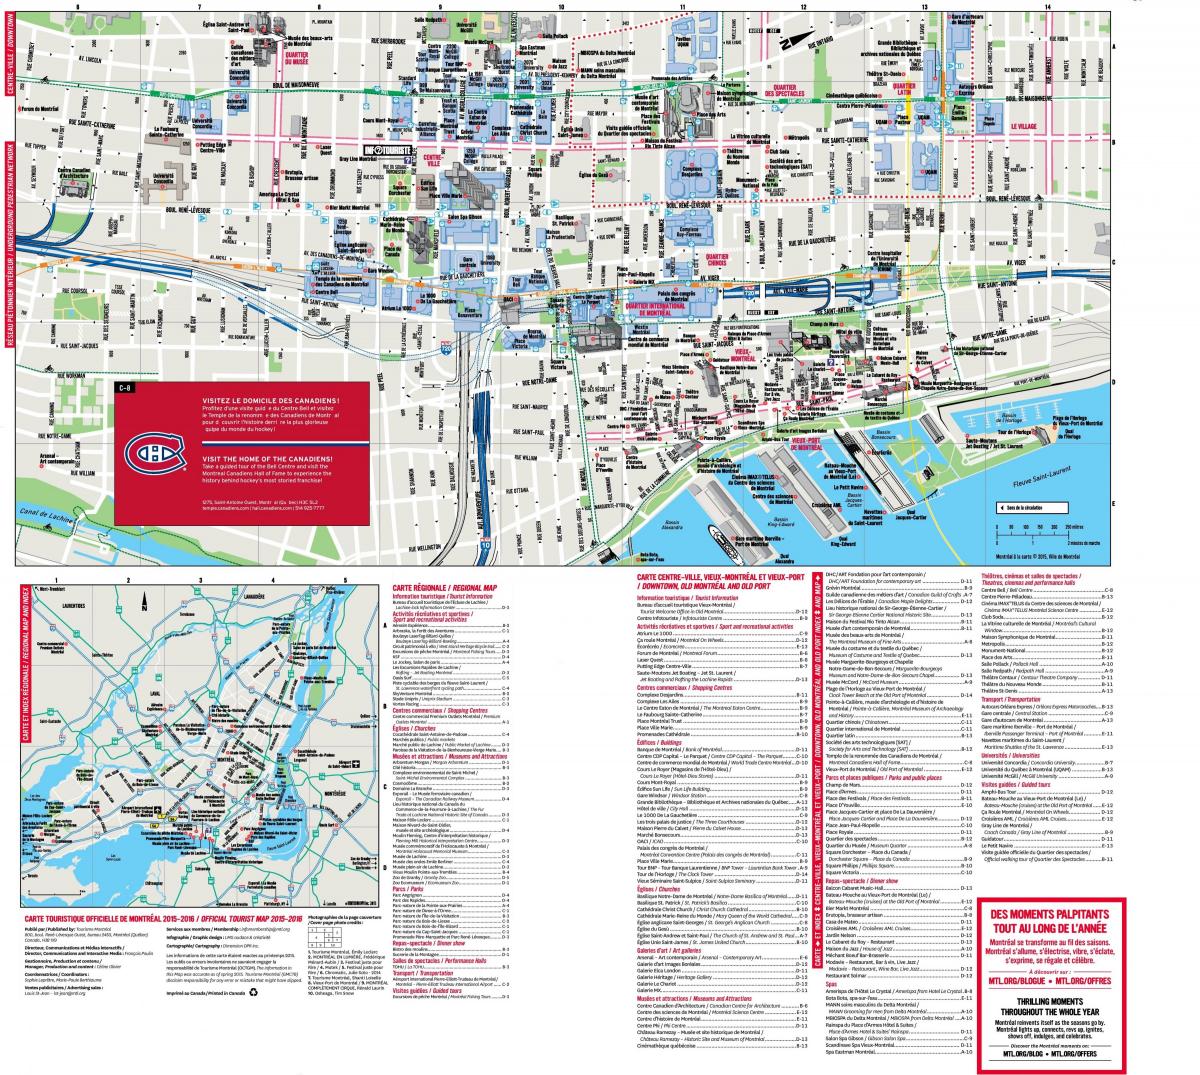 Plan du centre ville de Montreal